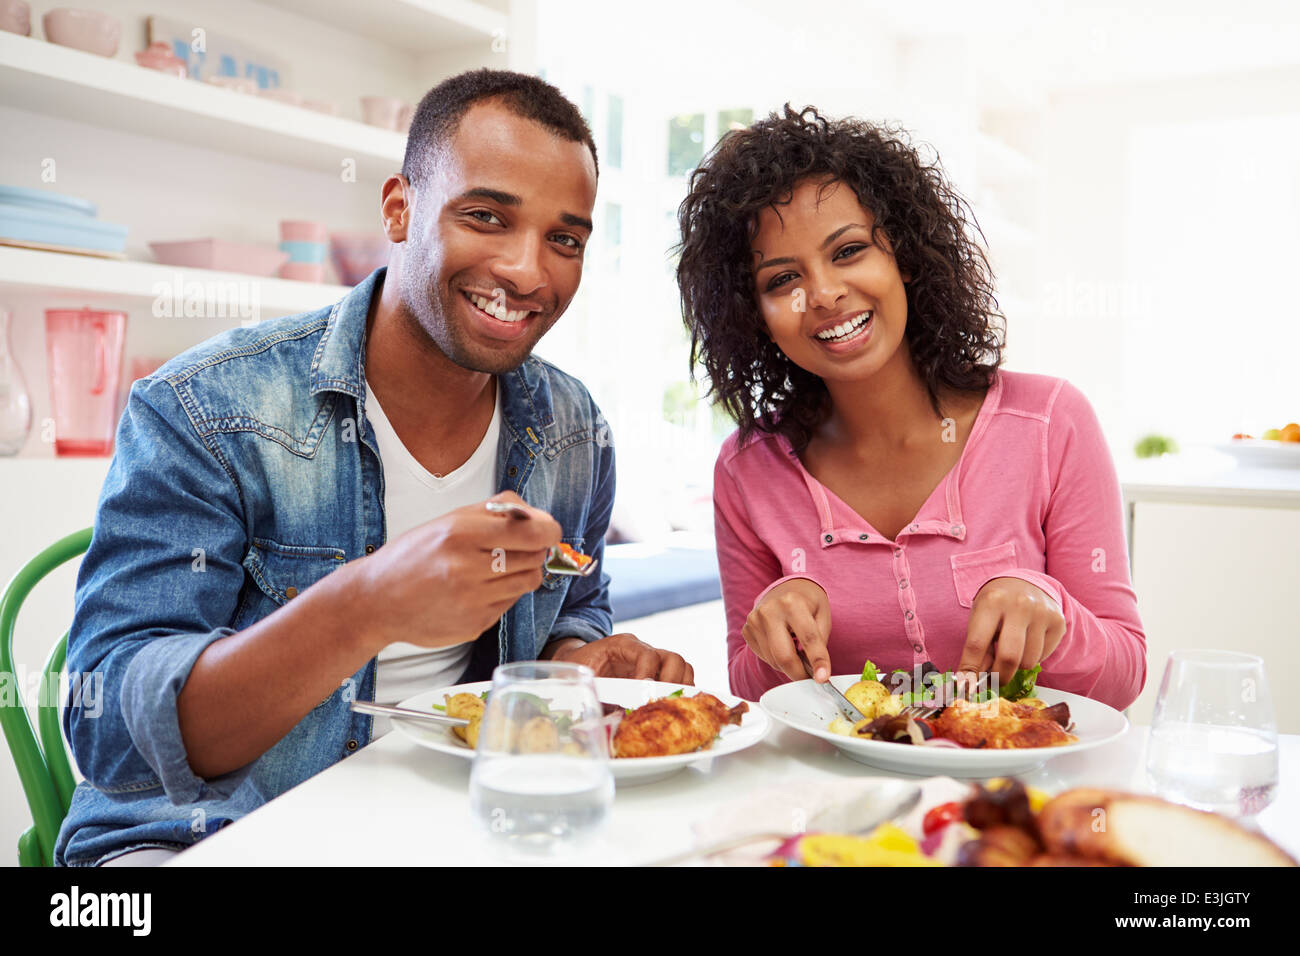 Junge afrikanische amerikanische paar Essen zu Hause Stockfoto